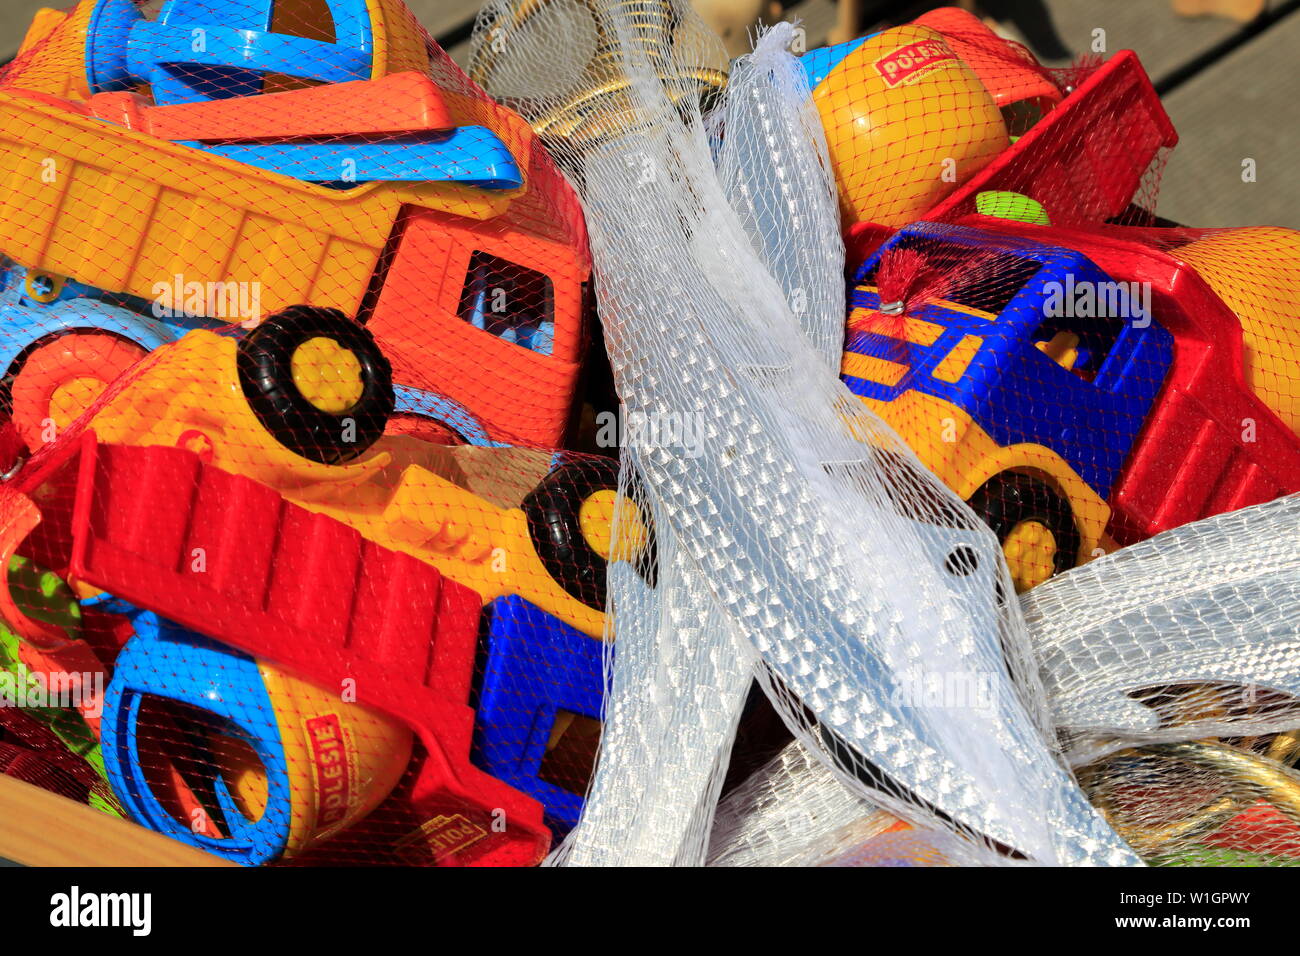 Juguetes de playa de plástico hecha con ningún pensamiento para el planeta. Foto de stock